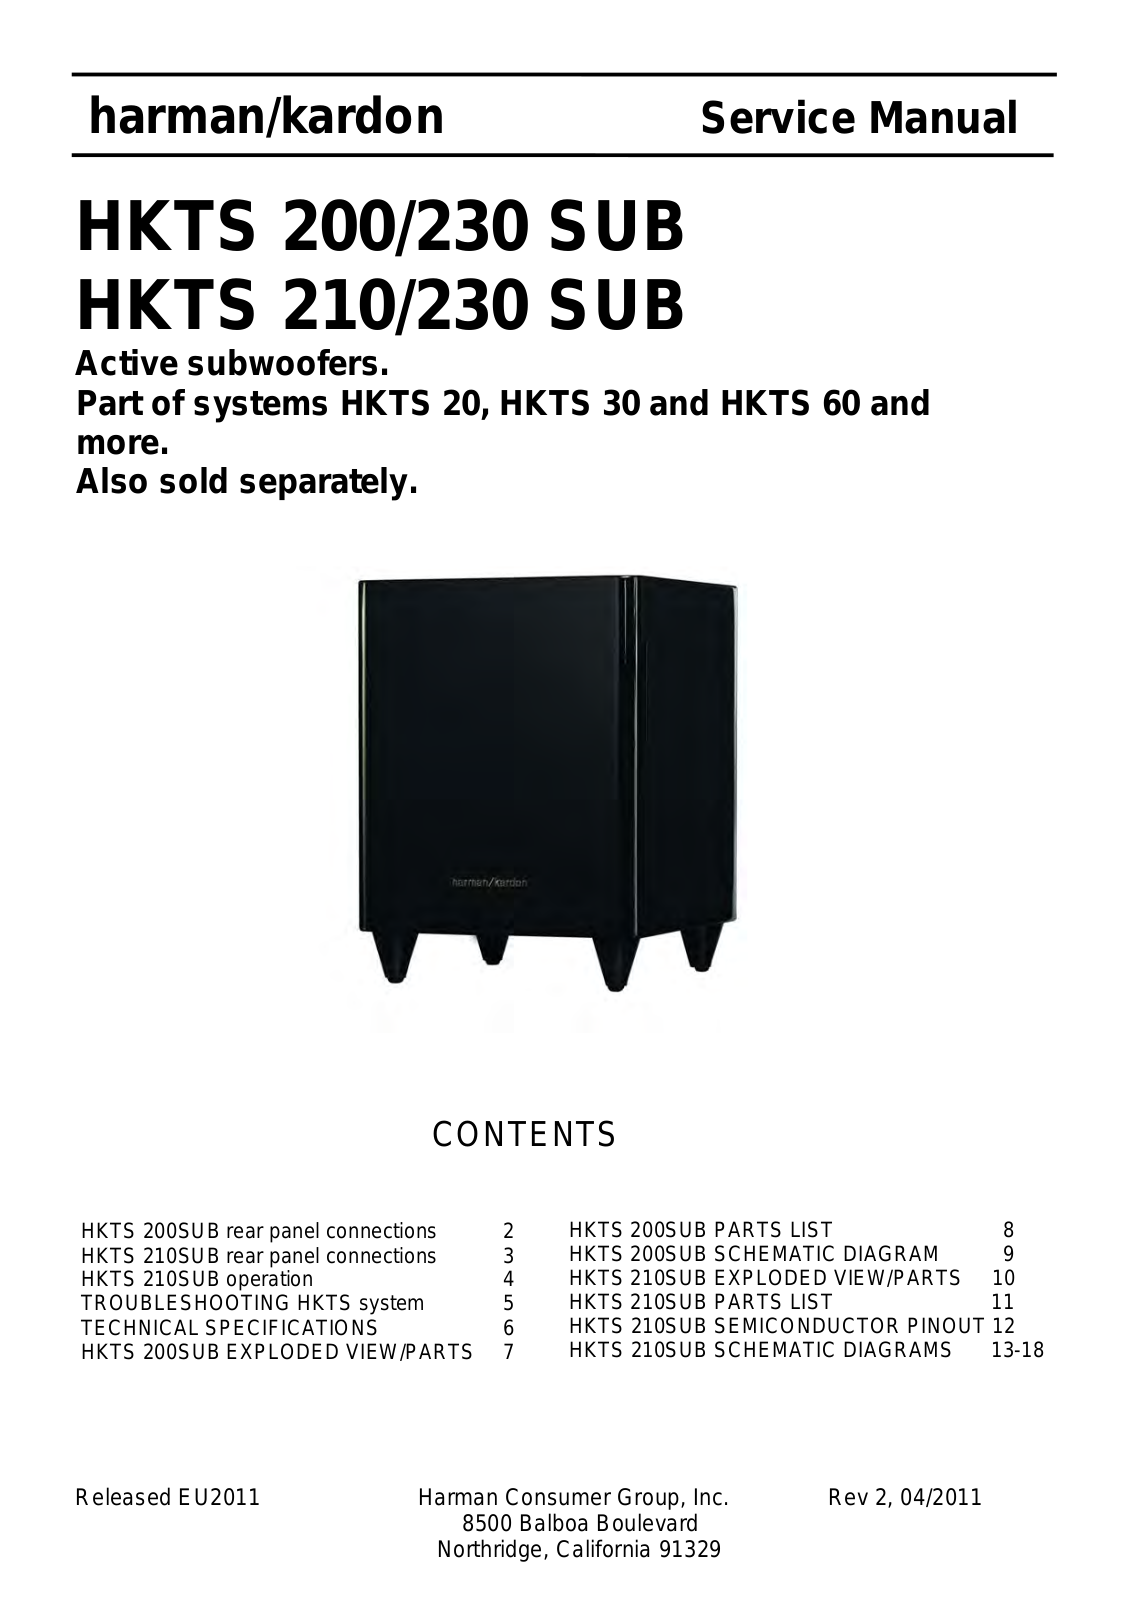 Harman Kardon HKTS210, HKTS200 Service Manual